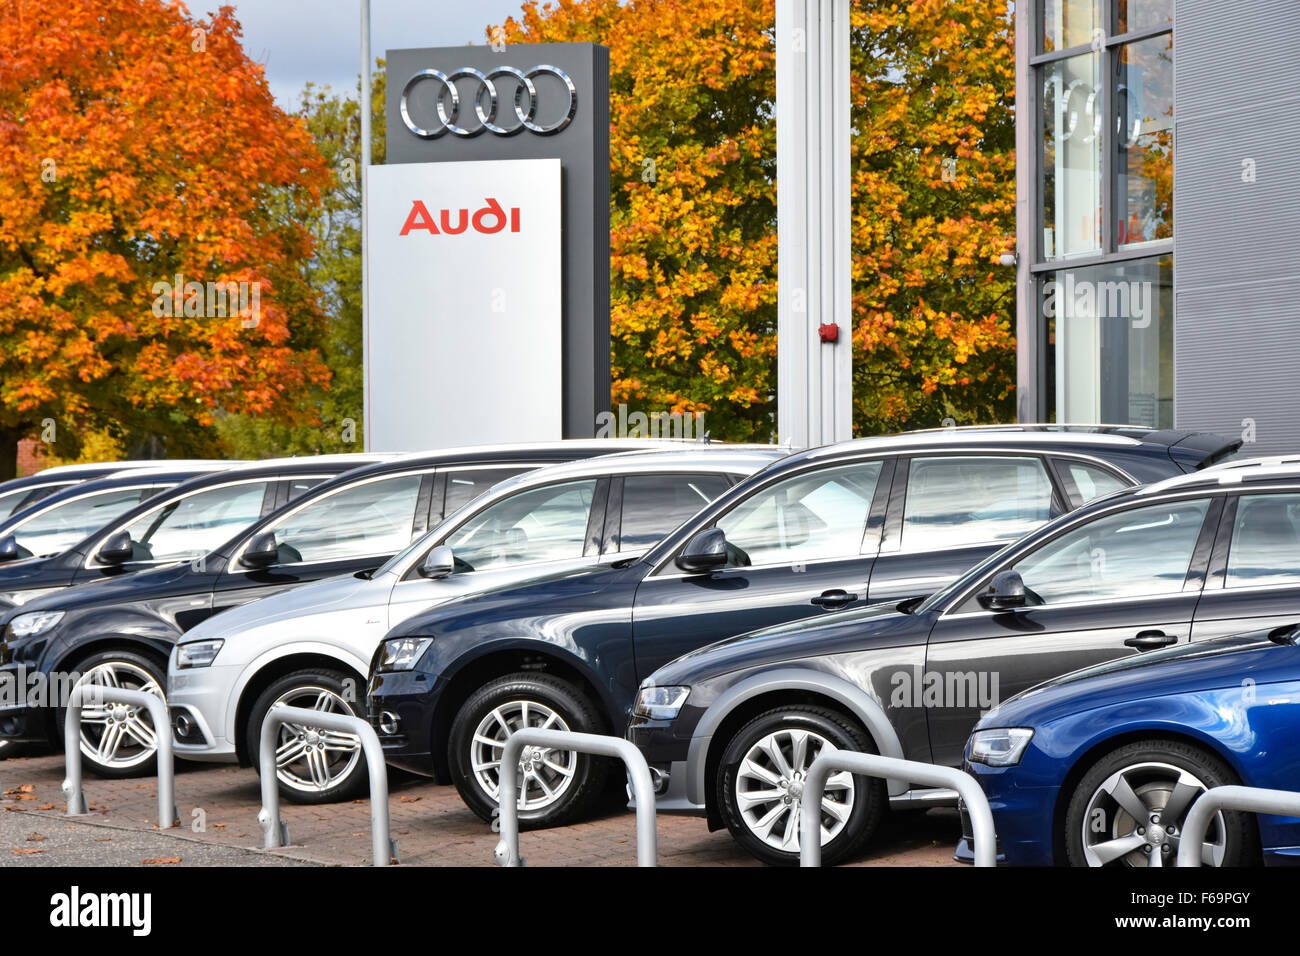 Concessionnaire automobile concessionnaire automobile Audi signe avec voitures à l'extérieur car showroom sur l'avant-cour Essex England UK fin de chaîne d'approvisionnement Banque D'Images